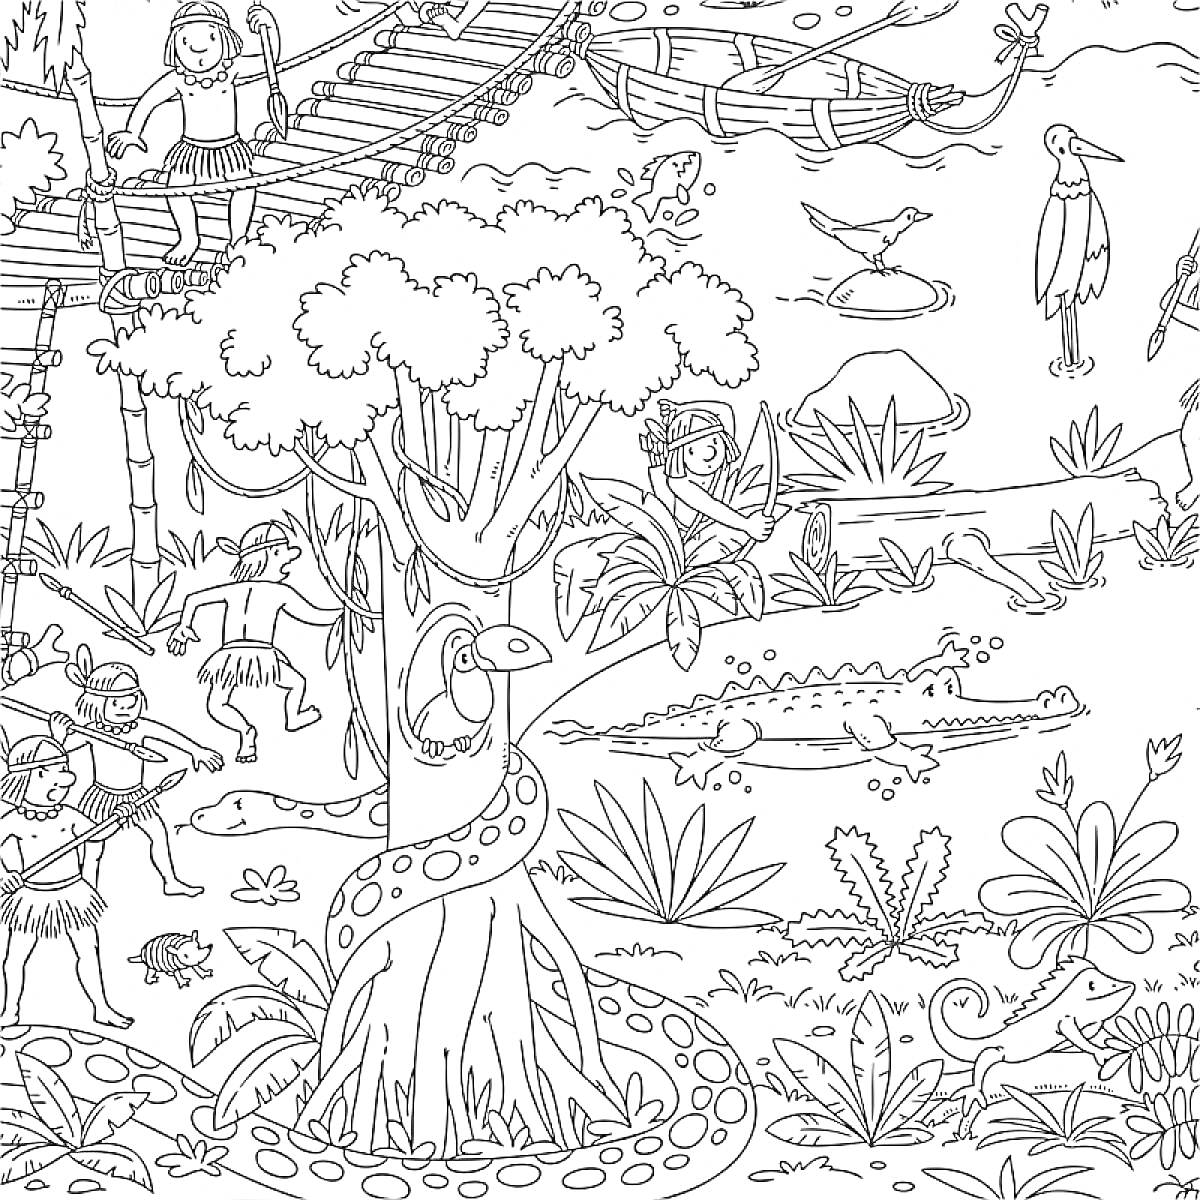 Раскраска Люди на мостике и на земле, лазающие по деревьям, змеи, крокодил в воде, тукан на дереве, птицы на фоне, маленькие животные среди травы